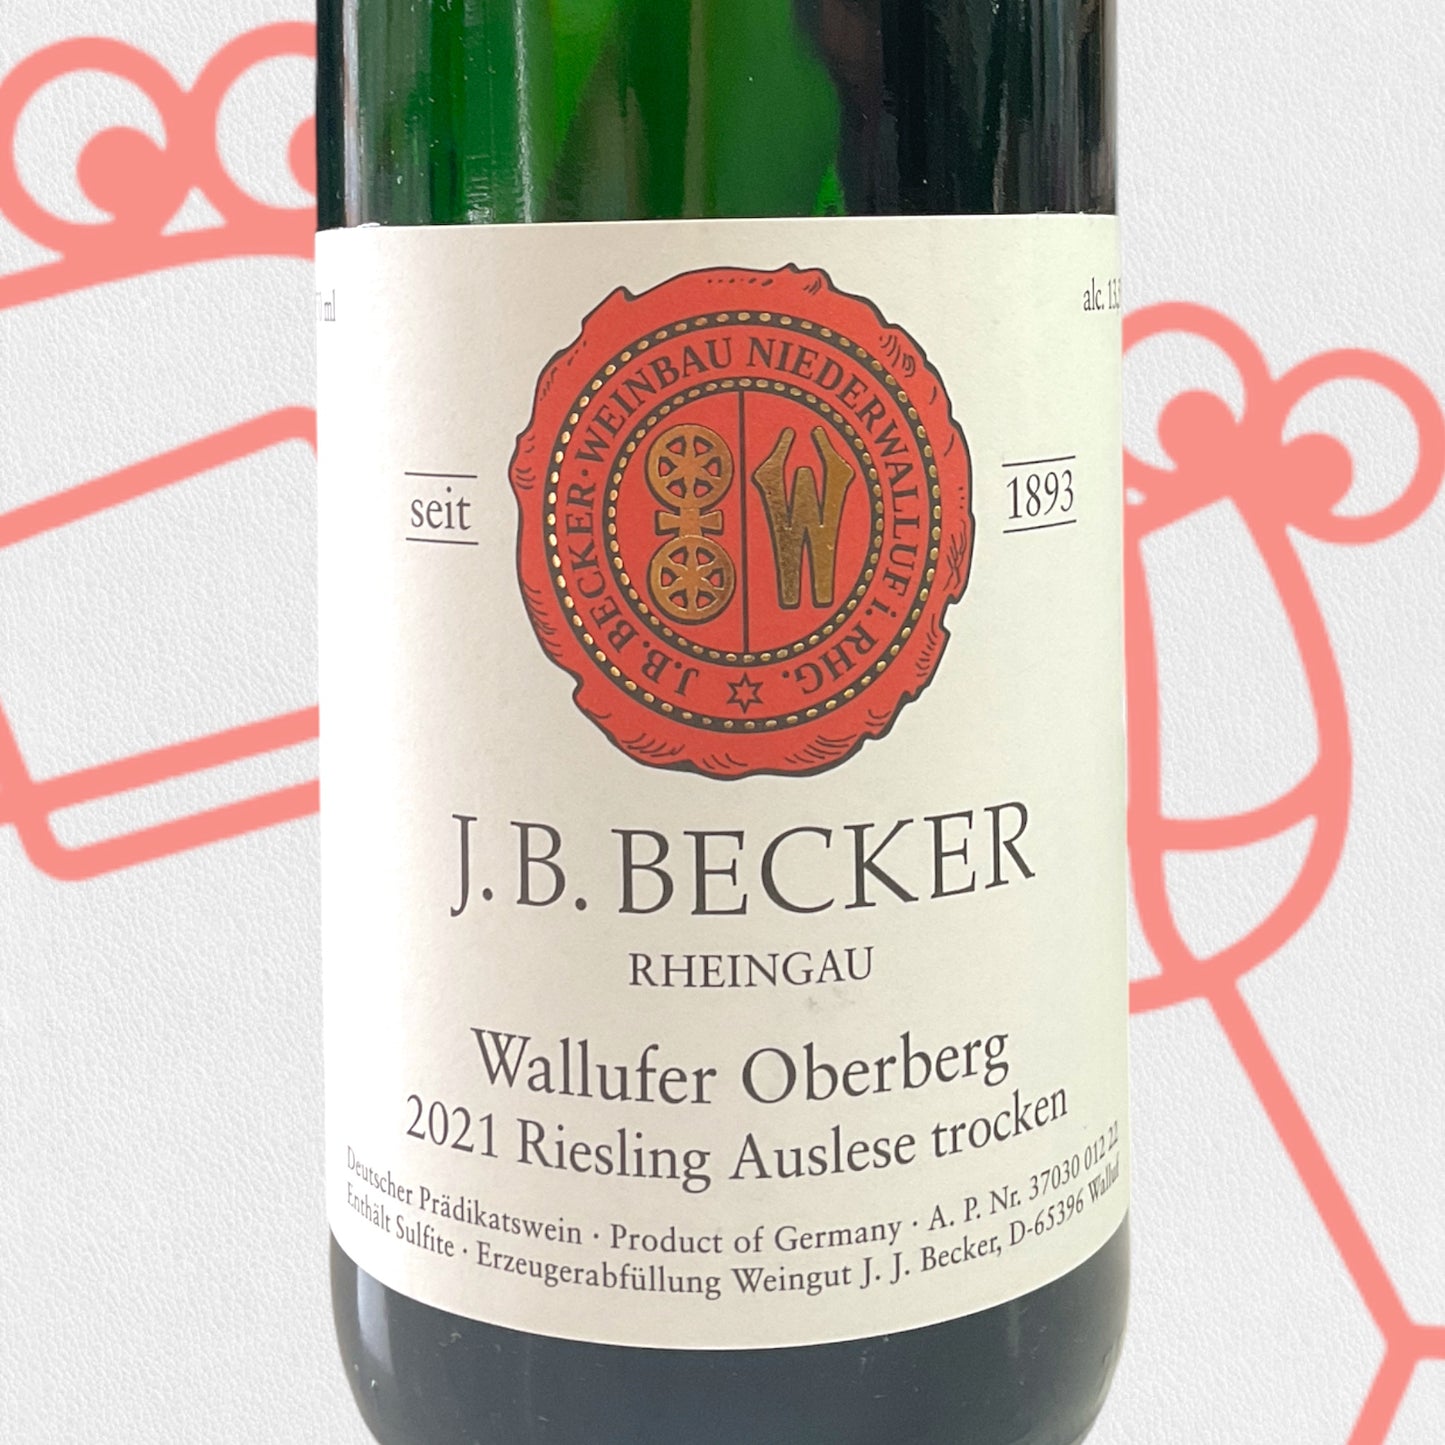 J.B. Becker Riesling 'Walkenberg Spatlese' Trocken 2021 Rheingau, Germany - Williston Park Wines & Spirits